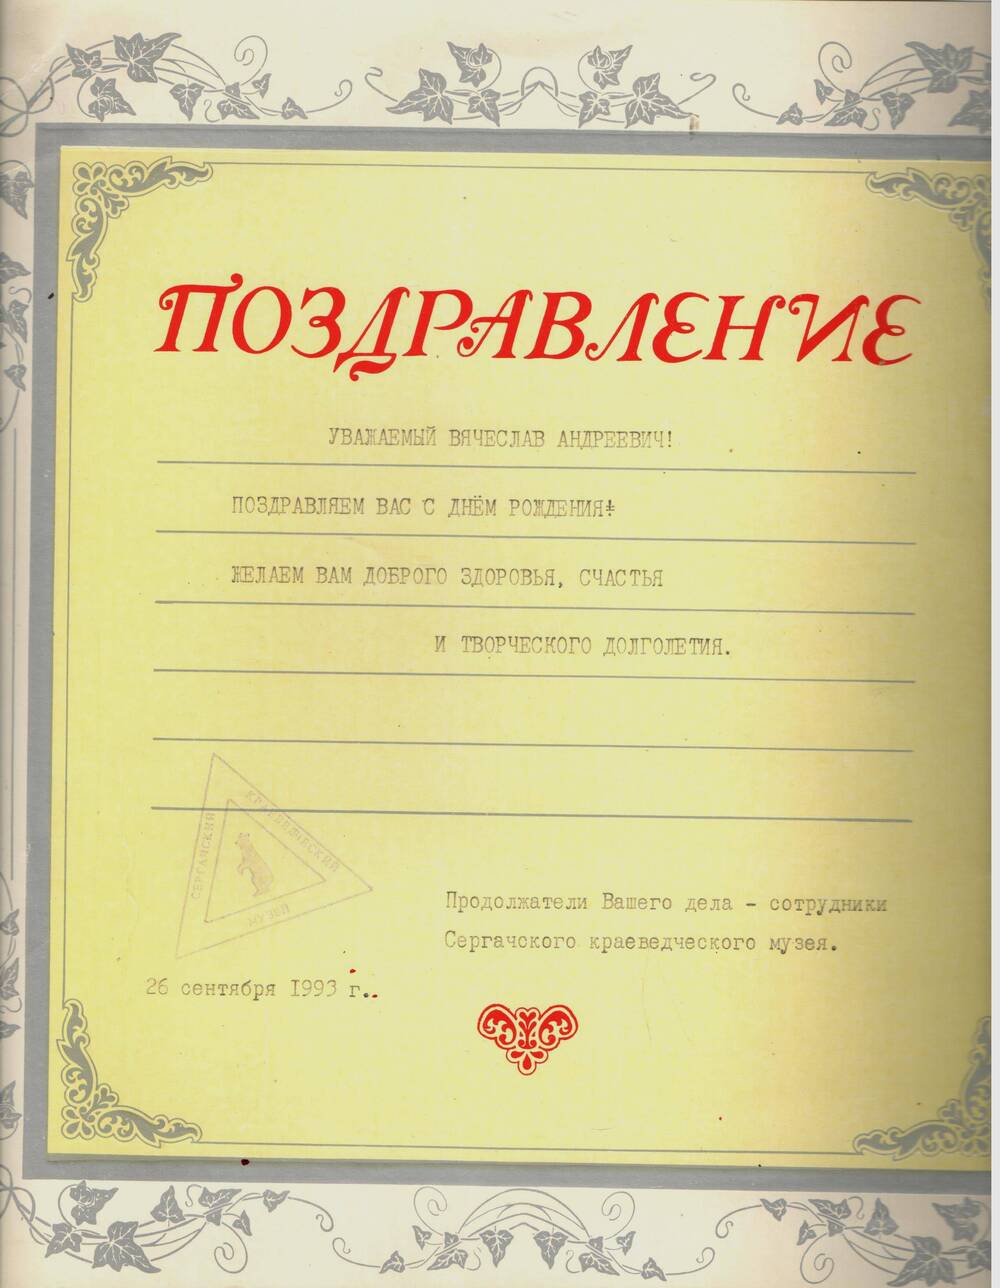 Поздравление Громова В.А. с днем рождения, от сотрудников музея. 1993 г